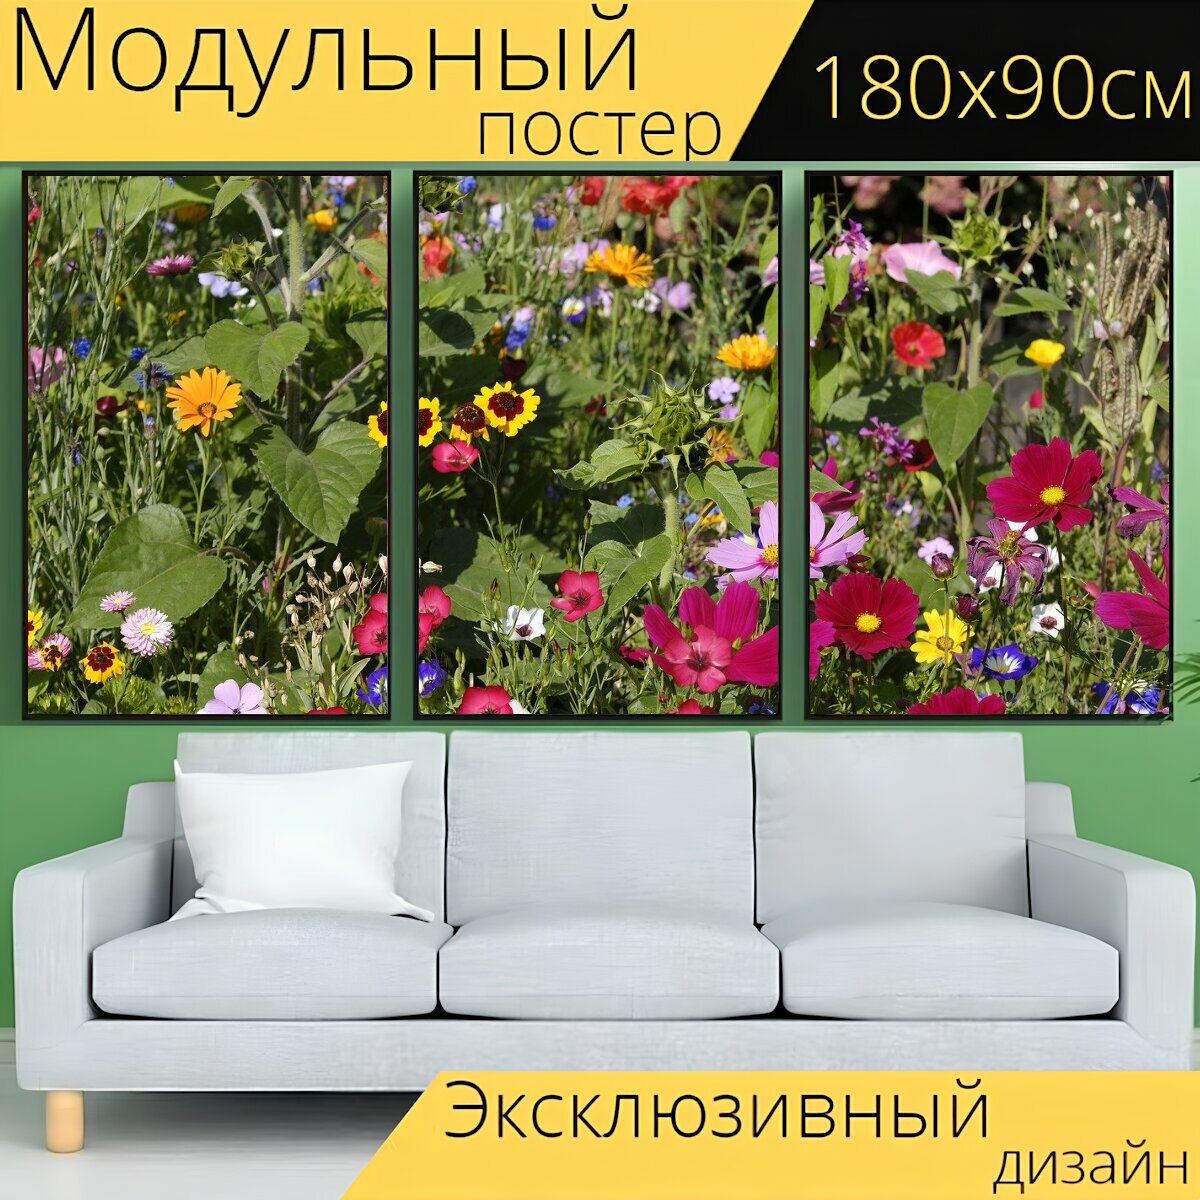 Модульный постер "Цветок, луговые цветы, цветочный луг" 180 x 90 см. для интерьера